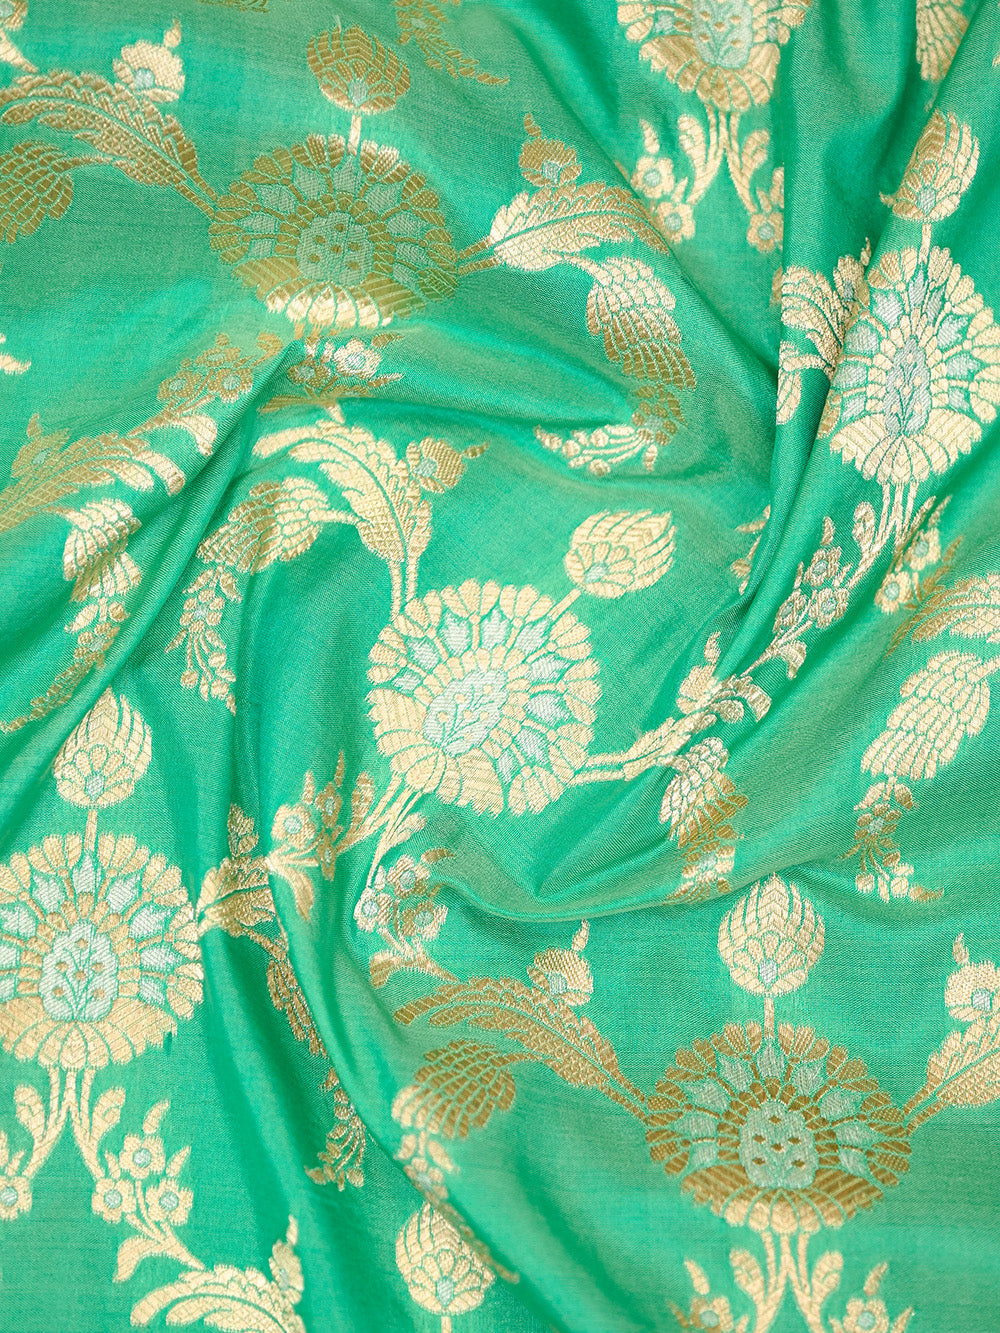 Aqua Green Jaal Uppada Katan Silk Handloom Banarasi Saree - Sacred Weaves